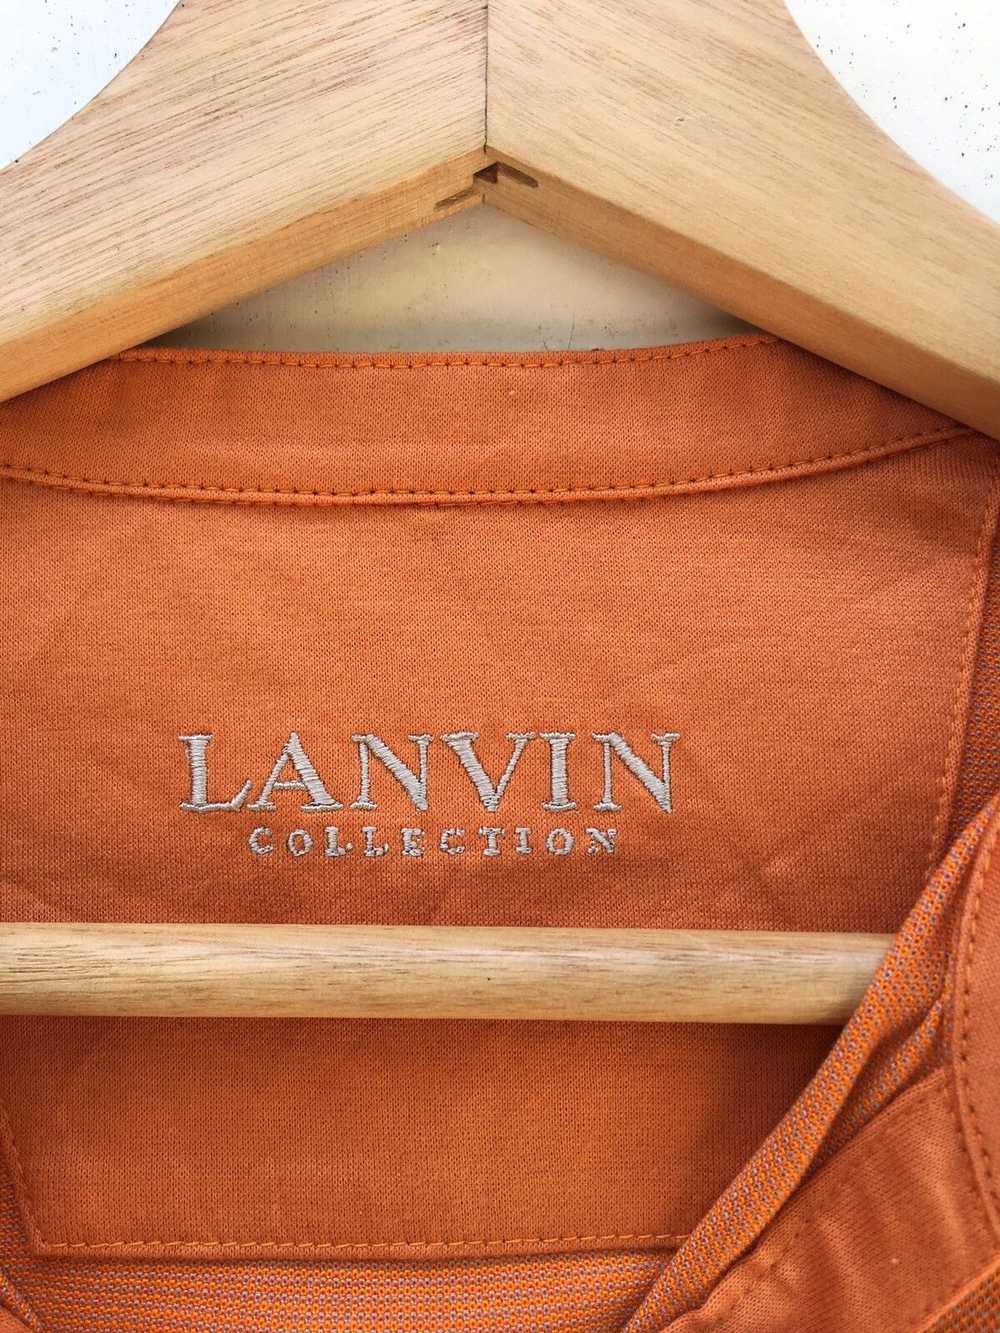 Lanvin × Vintage Vintage Lanvin Semi Casual Butto… - image 5